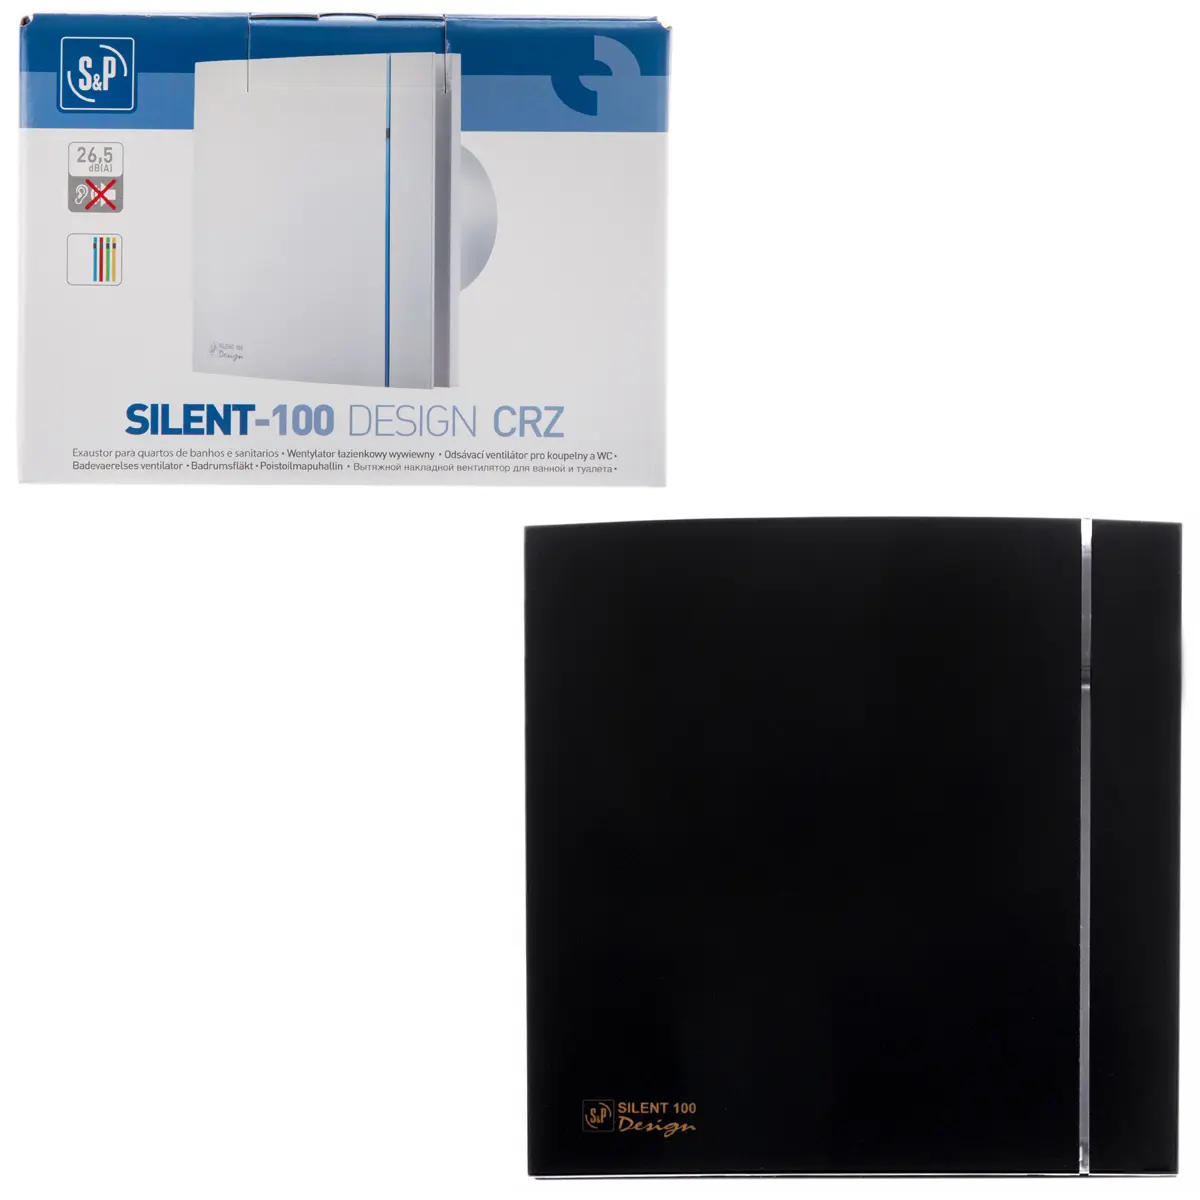 Soler&palau silent-100-cz black design-4c